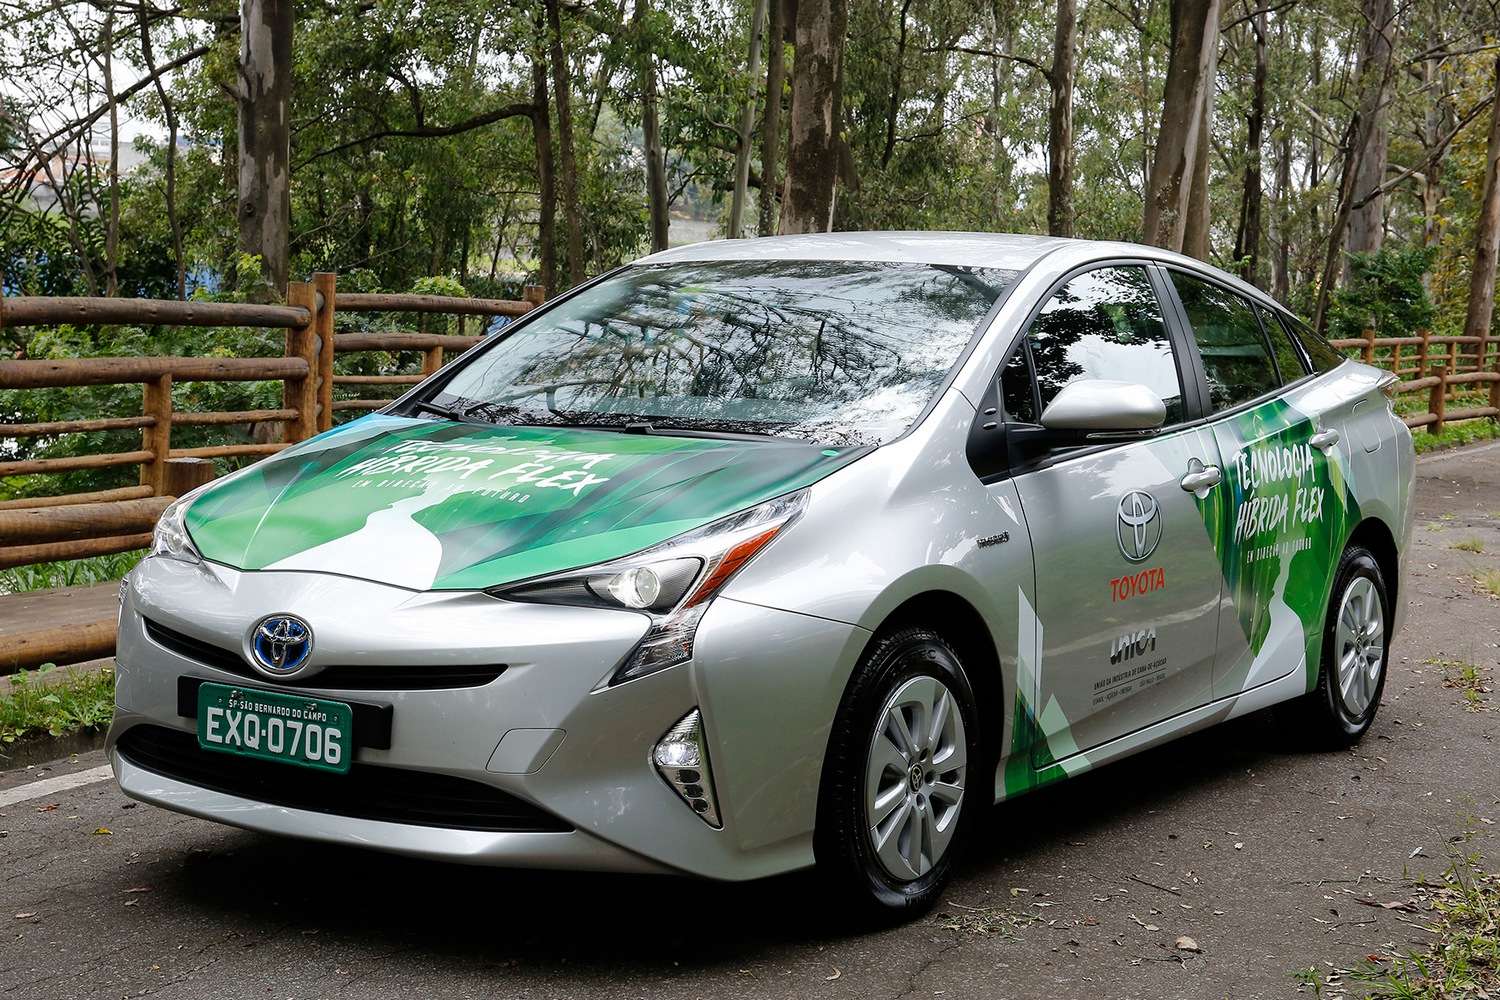 A Toyota PR-csapata nagyon ügyel a zöld image-re: a brazil kísérleti Priust sikerült erdőszélen, fakerítés mellett megörökíteni. Pedig a hibridautók takarékossága környezetkímélő üzeme elsősorban nagyvárosi közlekedésben teljesedik ki